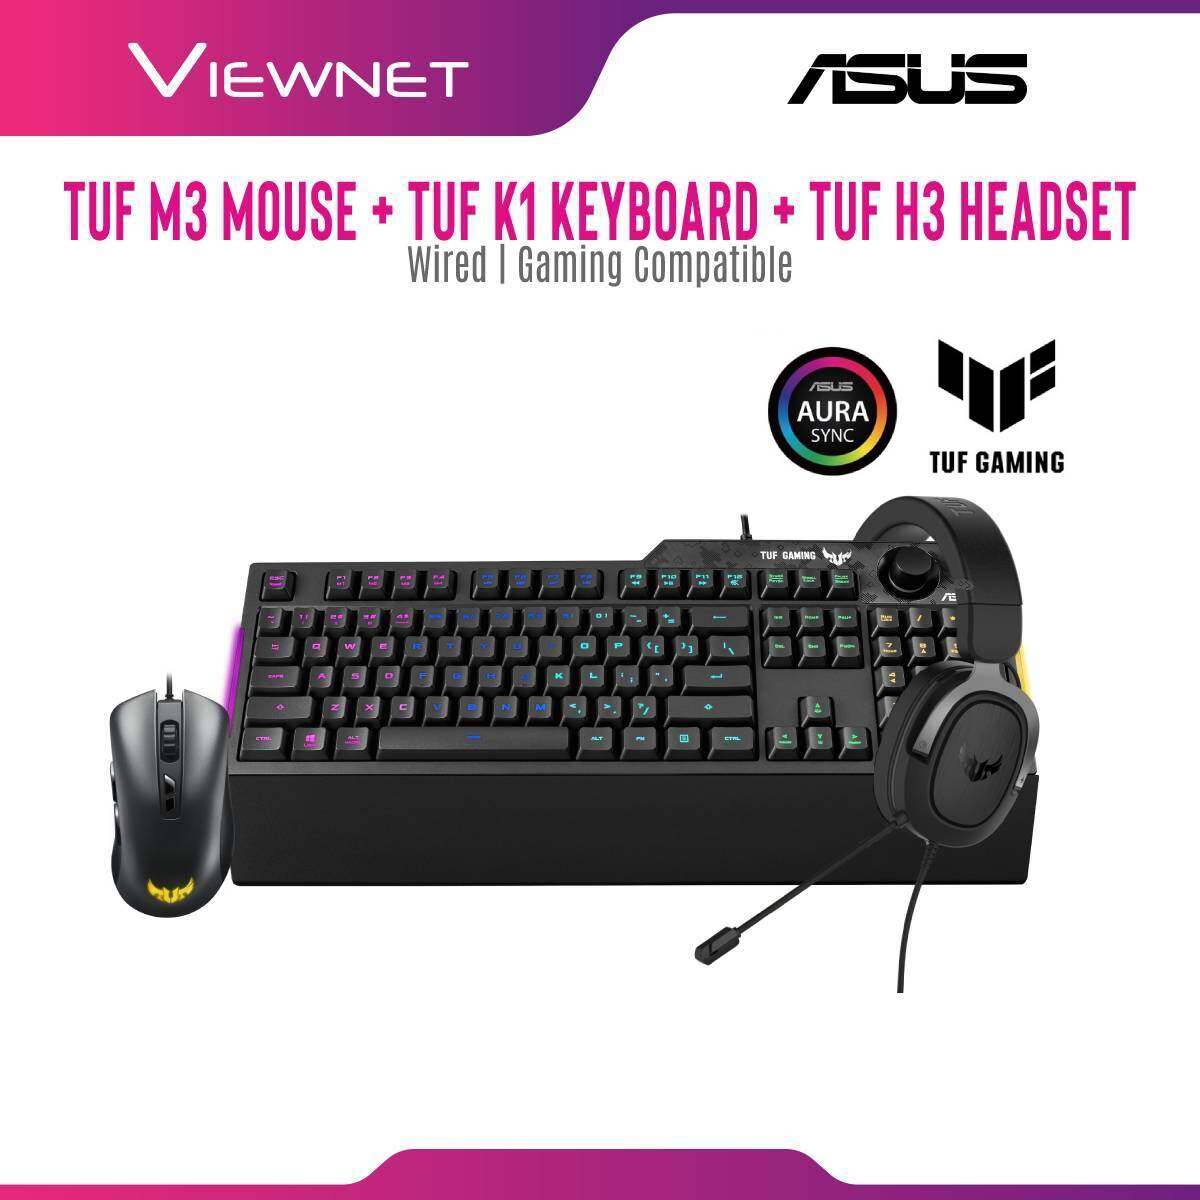 Asus Tuf M3 Wired Gaming Mouse + Asus Tuf K1 Wired Gaming Keyboard + Asus H3 (Silver) / (Red) / (Gun Metal) Gaming Headset